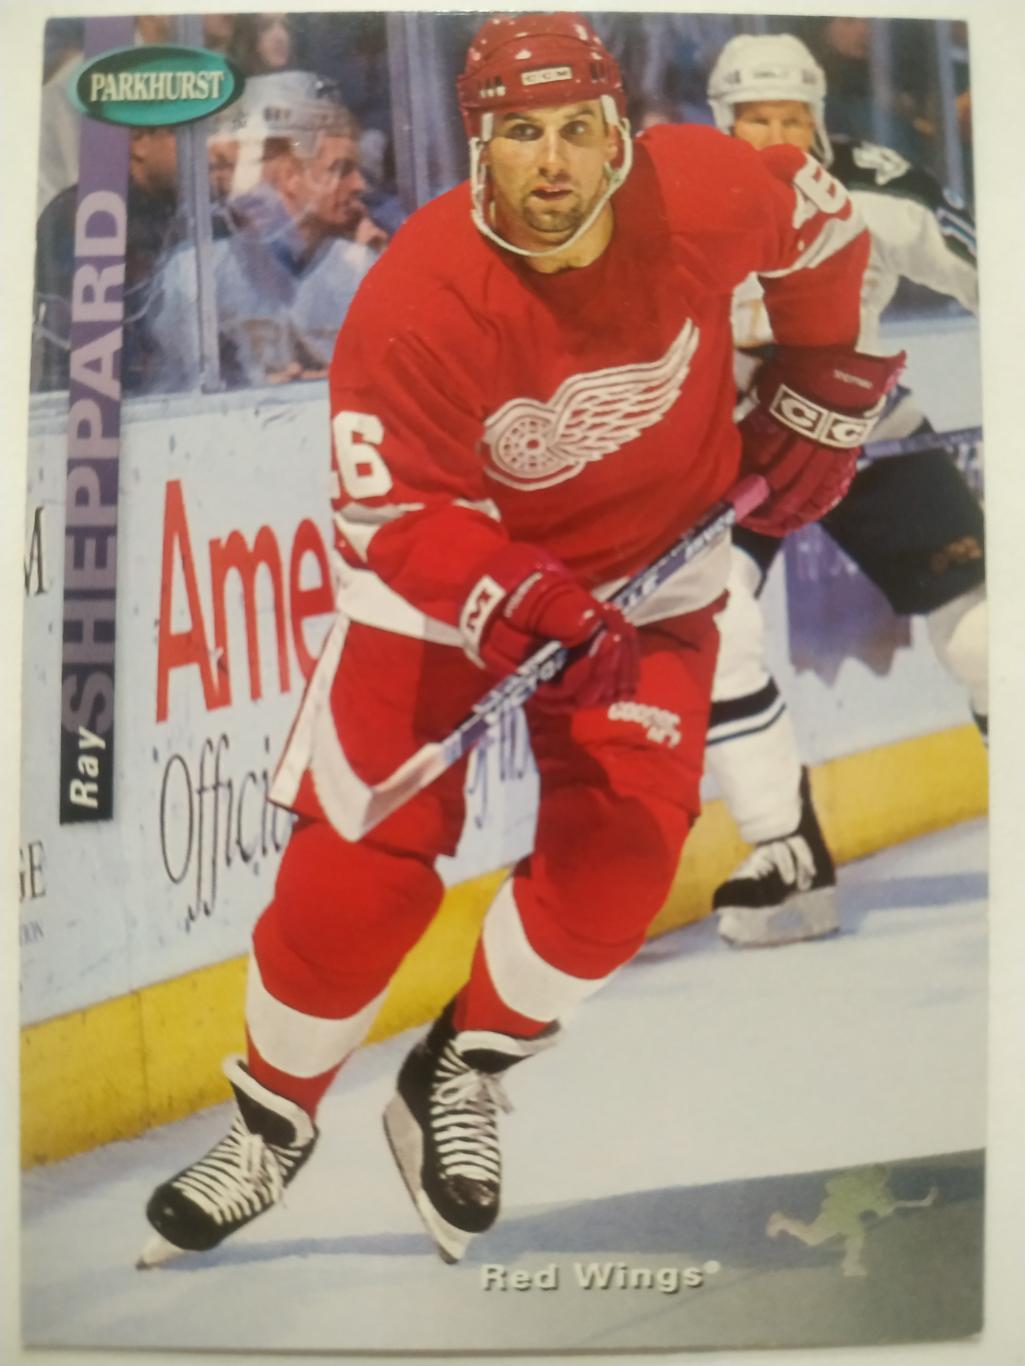 ХОККЕЙ КАРТОЧКА НХЛ PARKHURST 1994-95 NHL RAY SHEPPARD DETROIT RED WINGS #SE49